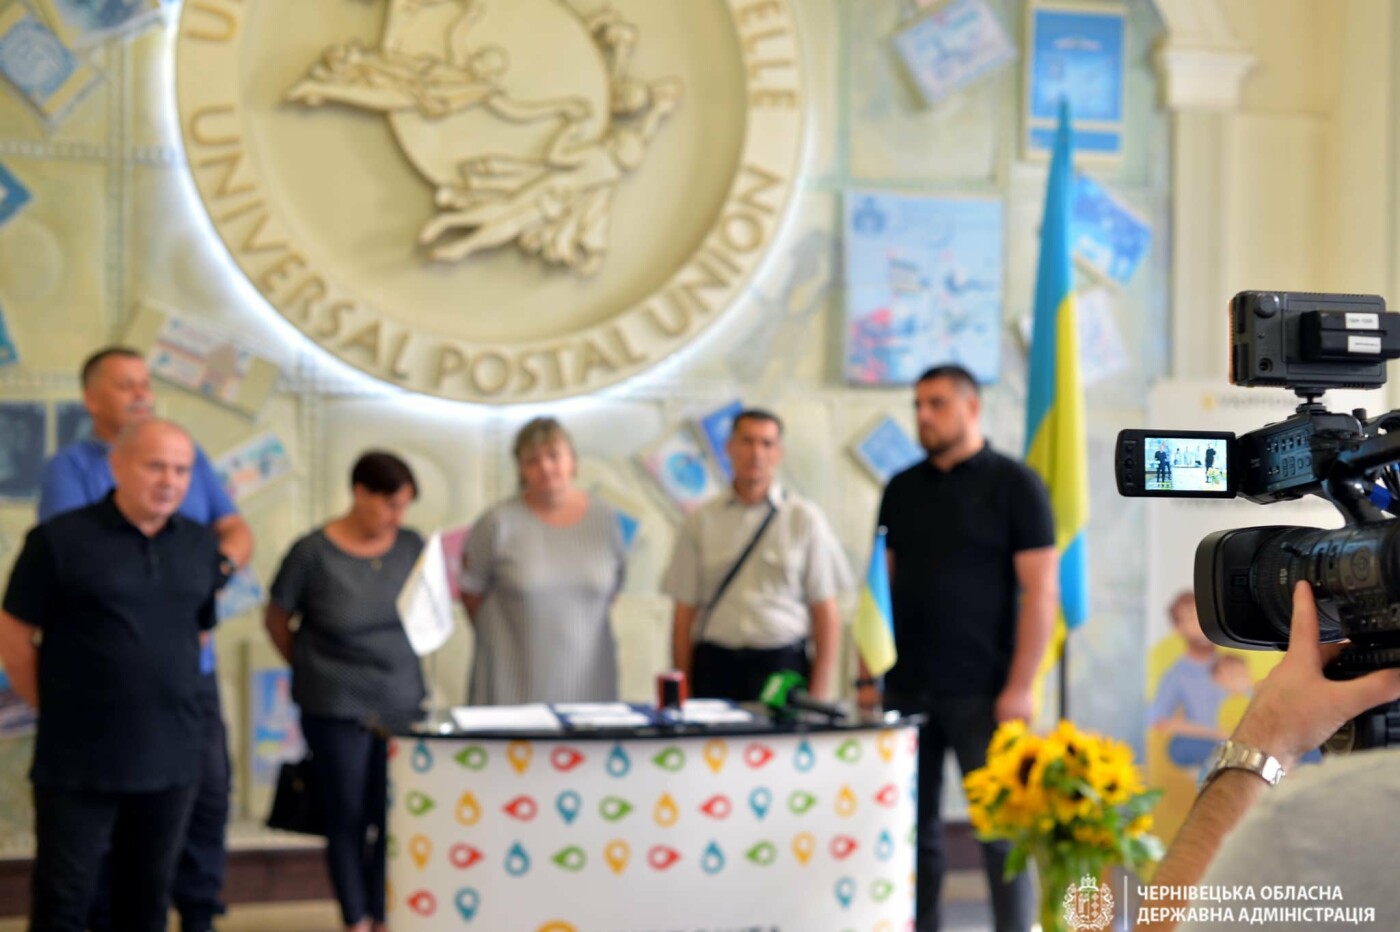 500 тисяч екземплярів - Укрпошта випускає марку «Вічна пам’ять» в пам’ять про загиблих героїв